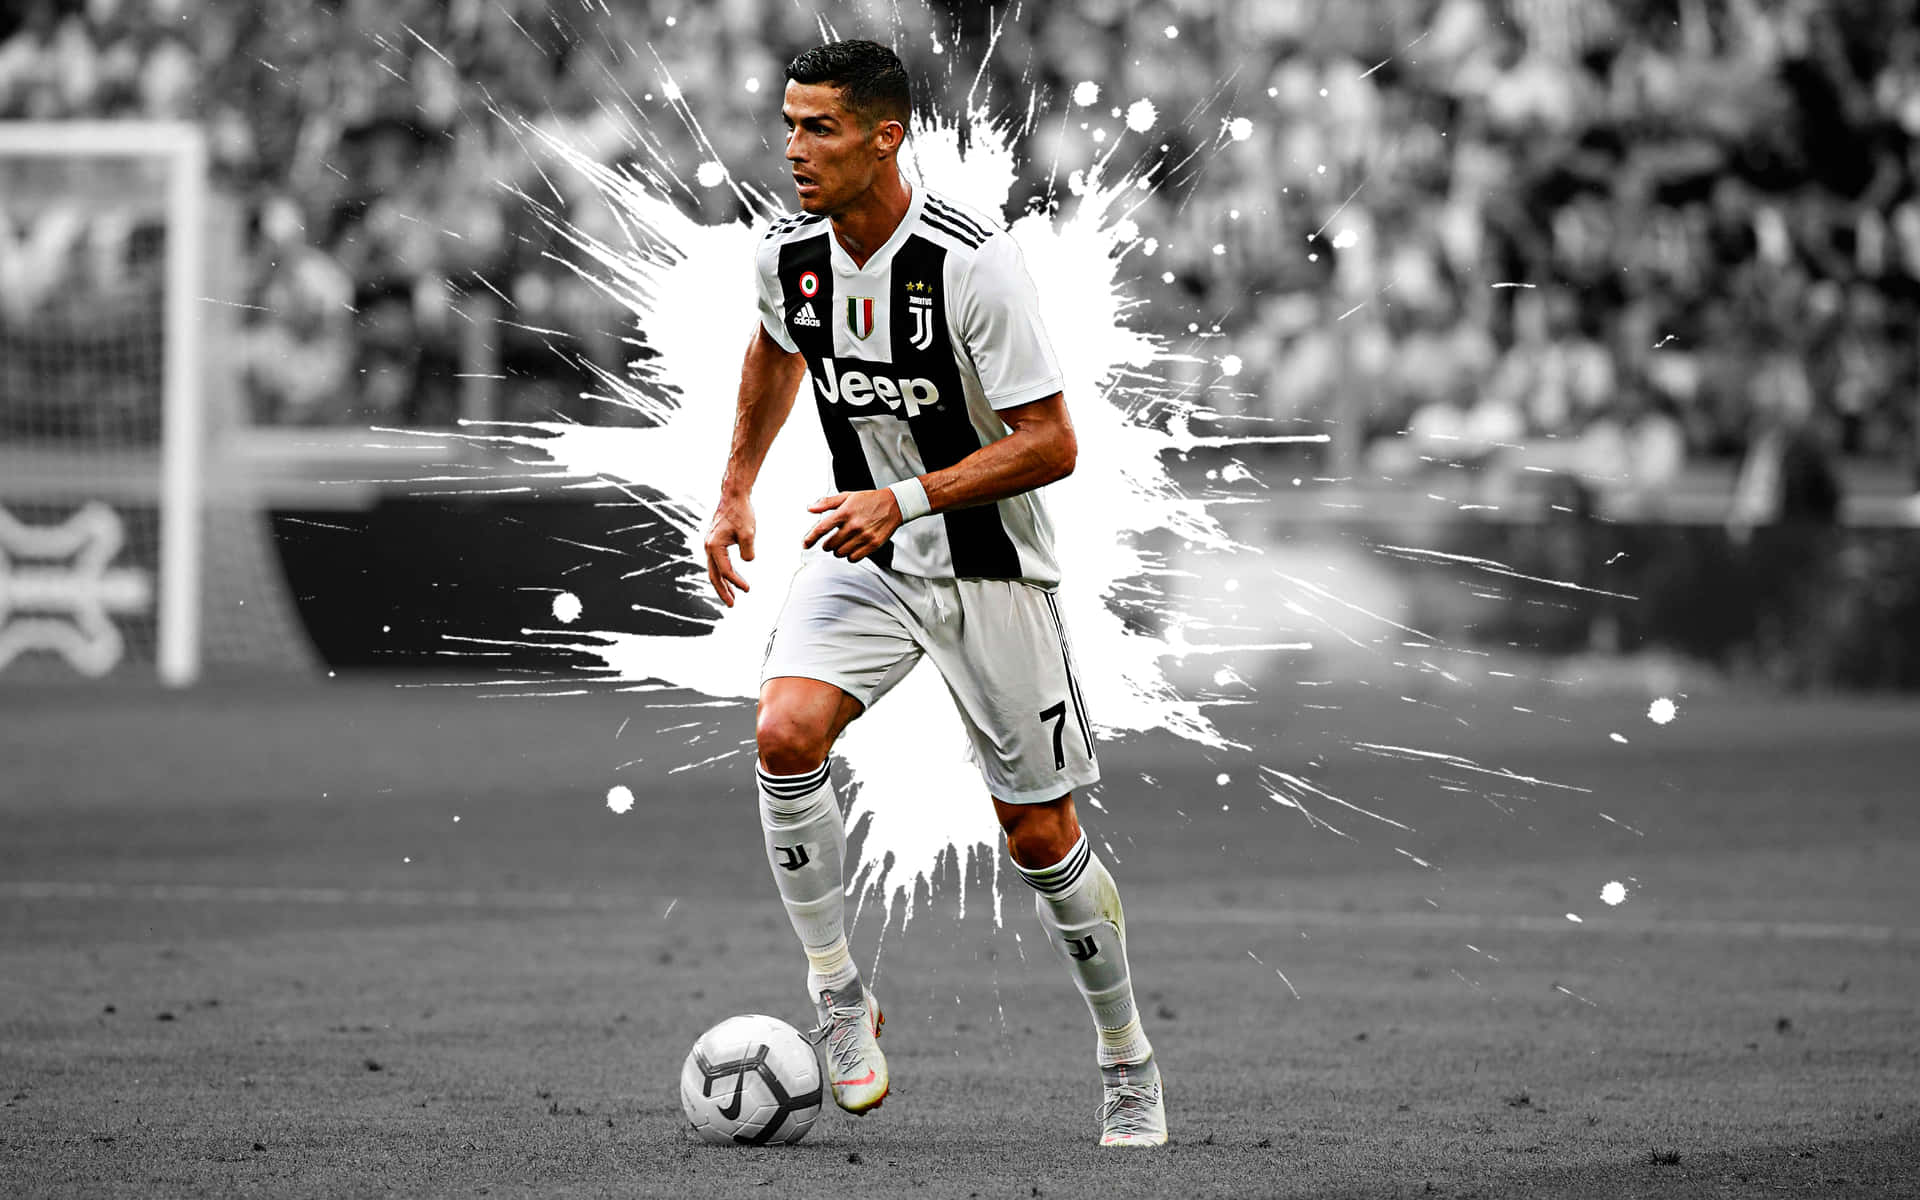 Ronaldo Dynamic Soccer Action Juventus Wallpaper